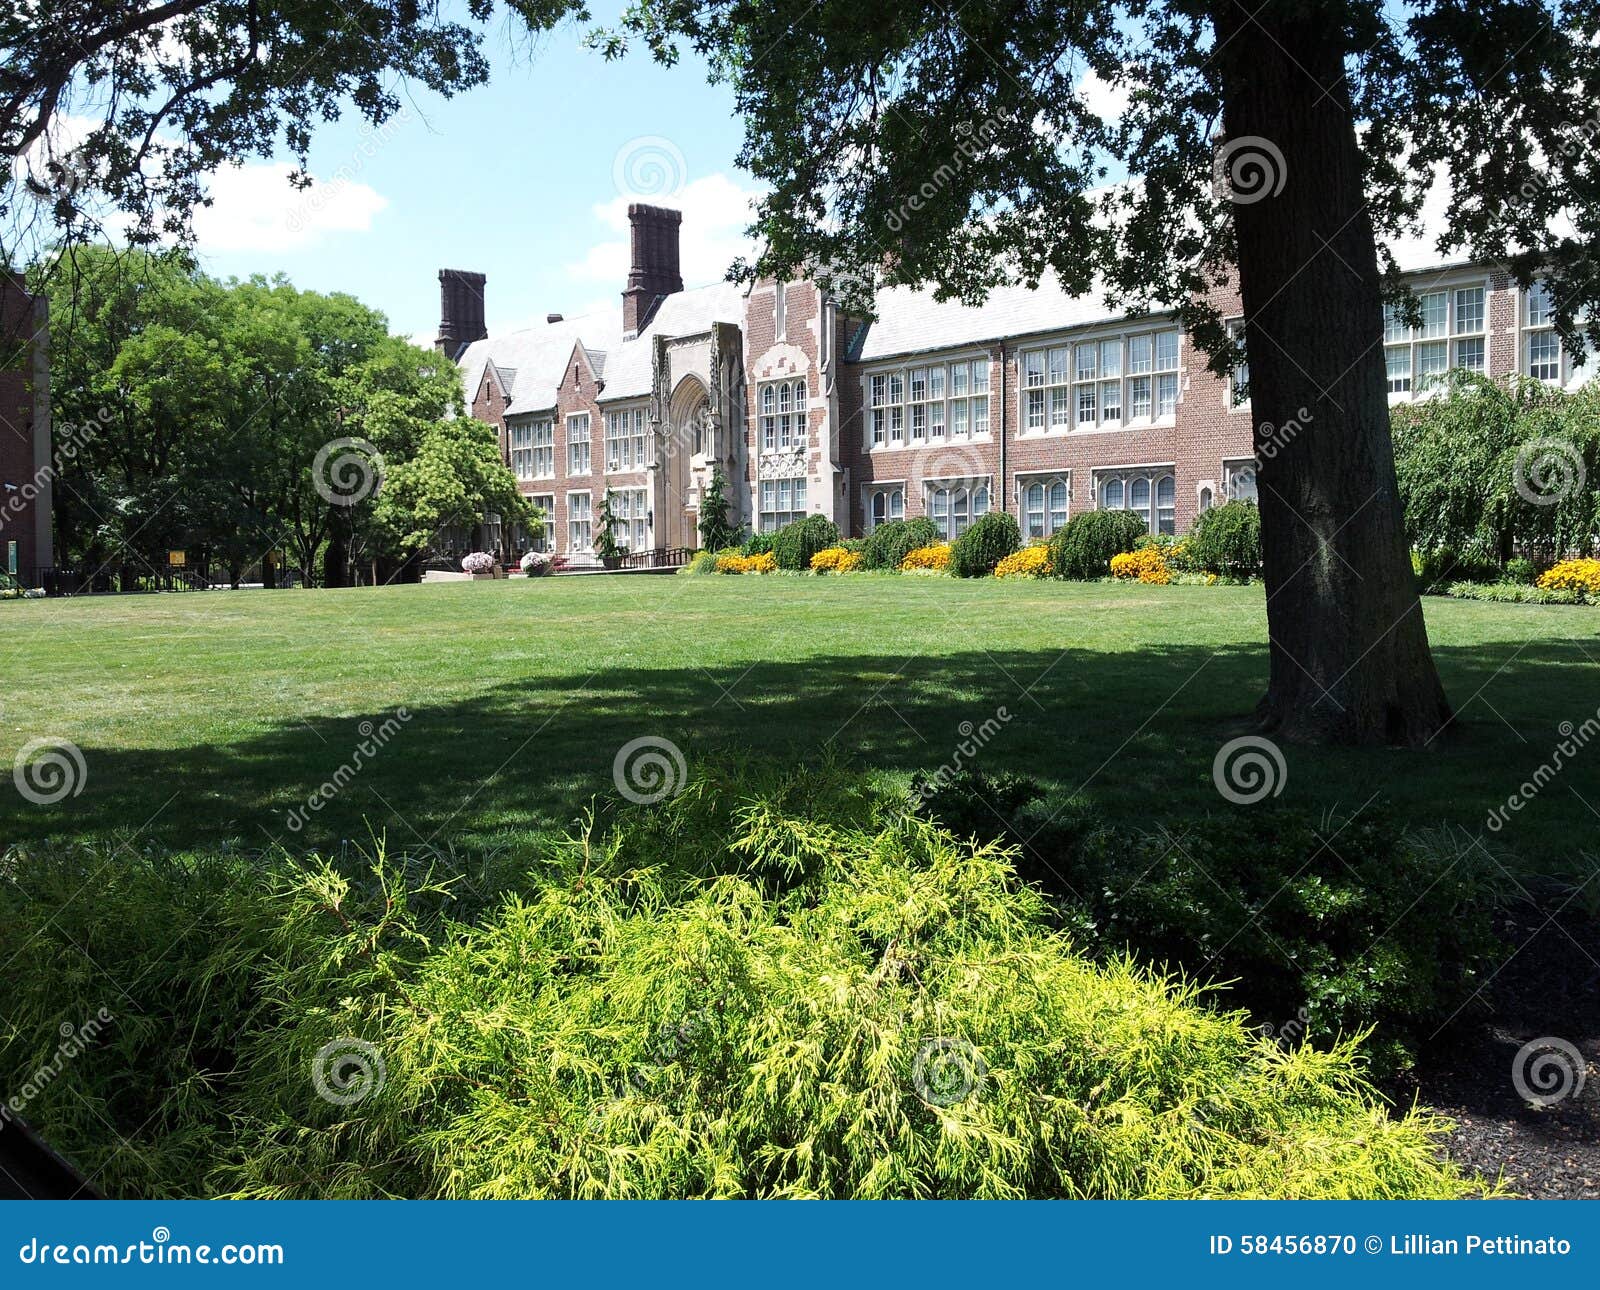 New Jersey City University, Jersey City, NJ Stock Photo - Image of ...